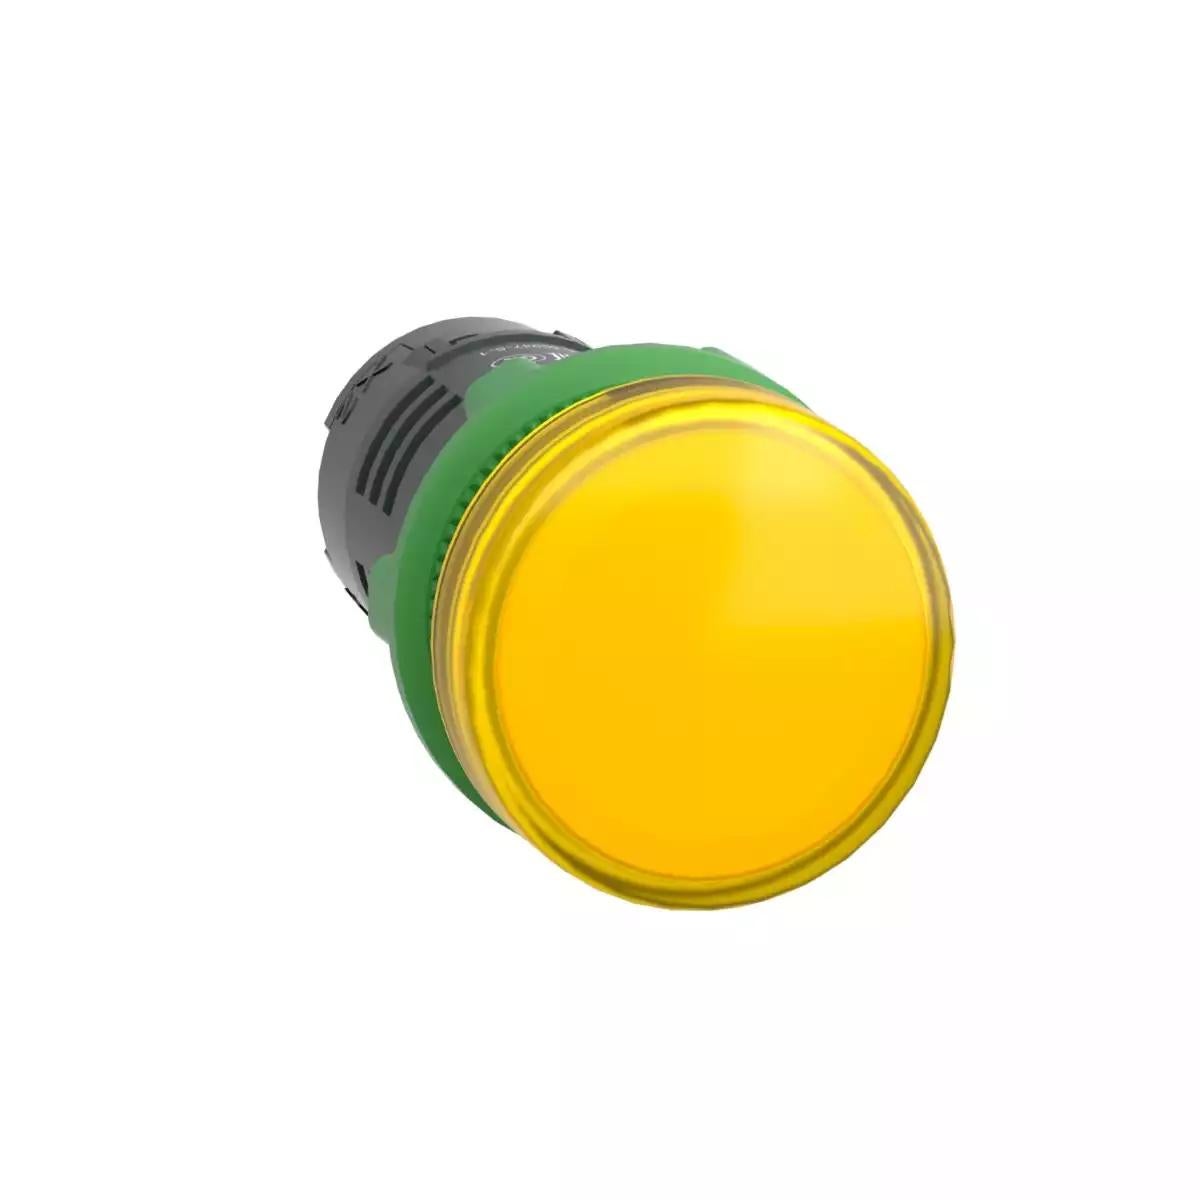 Pilot light, Harmony XB5, grey plastic, yellow, 22mm, universal LED, plain lens, 24V AC DC